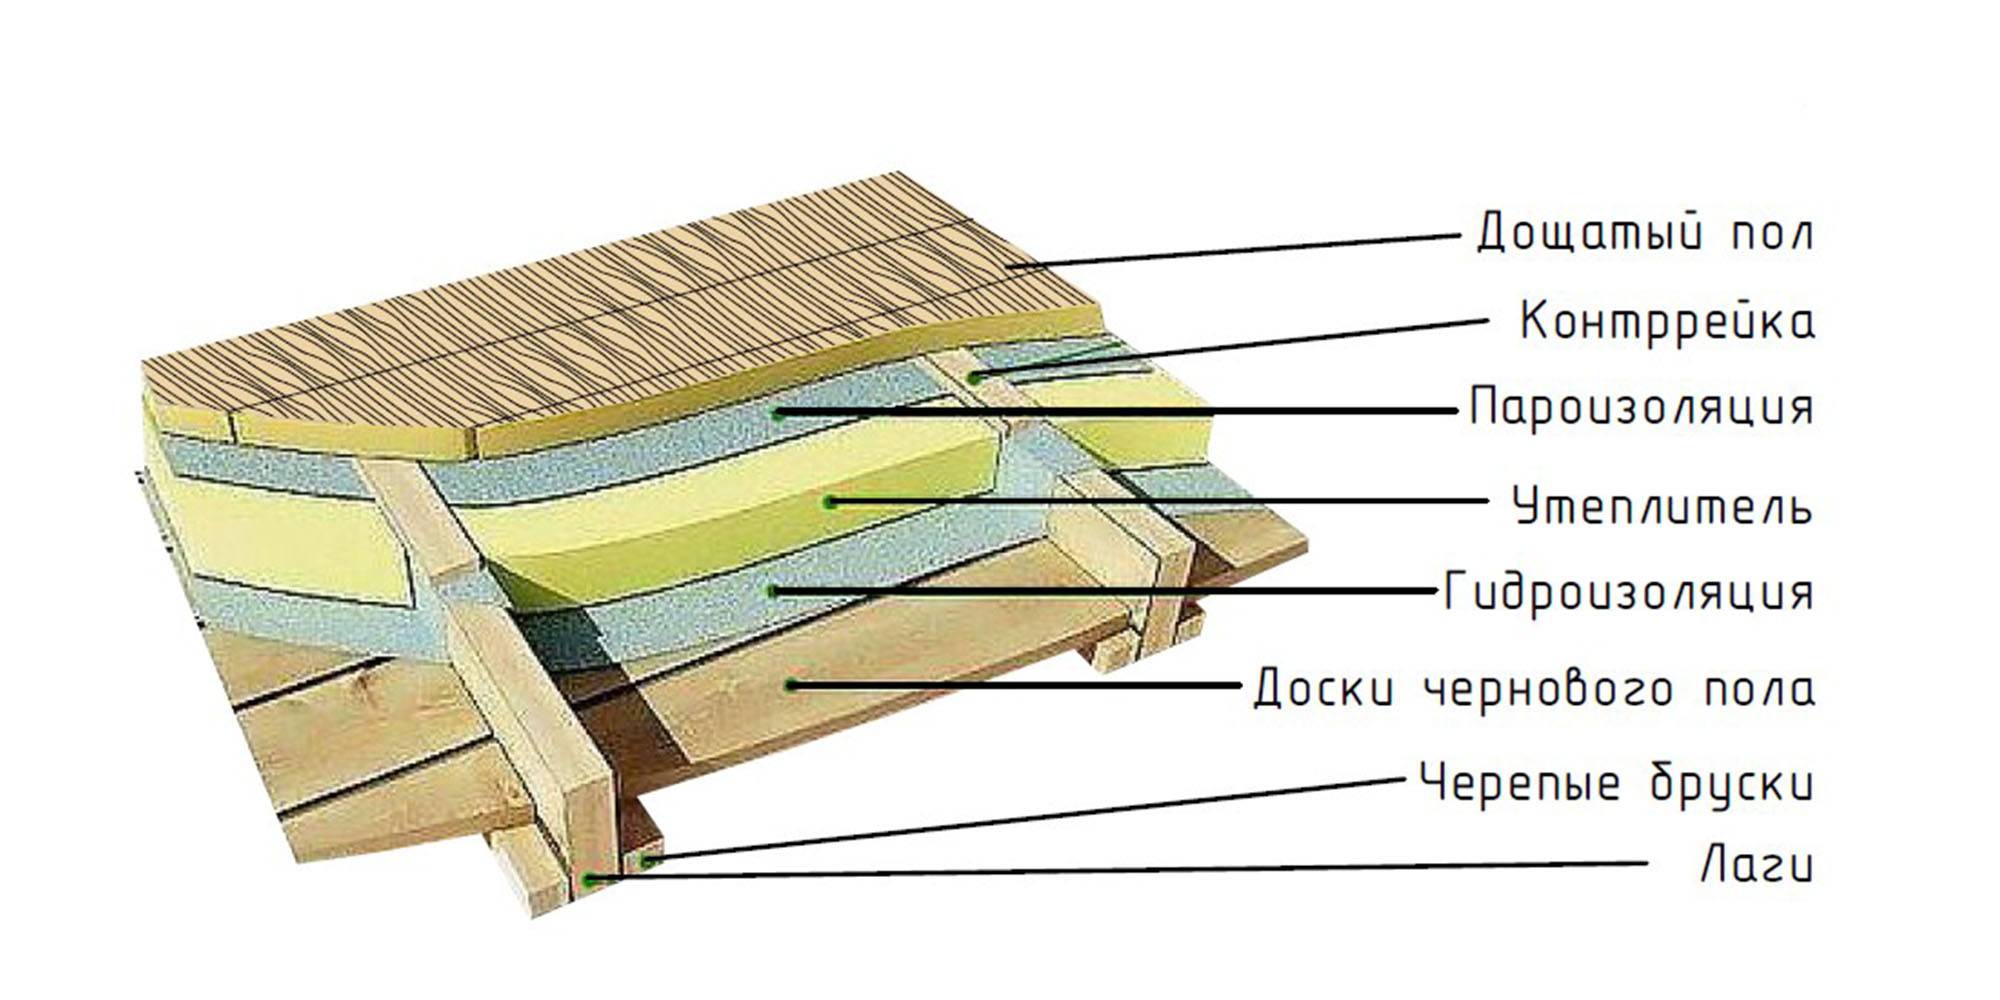 Утепление пола в деревянном доме снизу своими руками: пеноплексом и по лагам